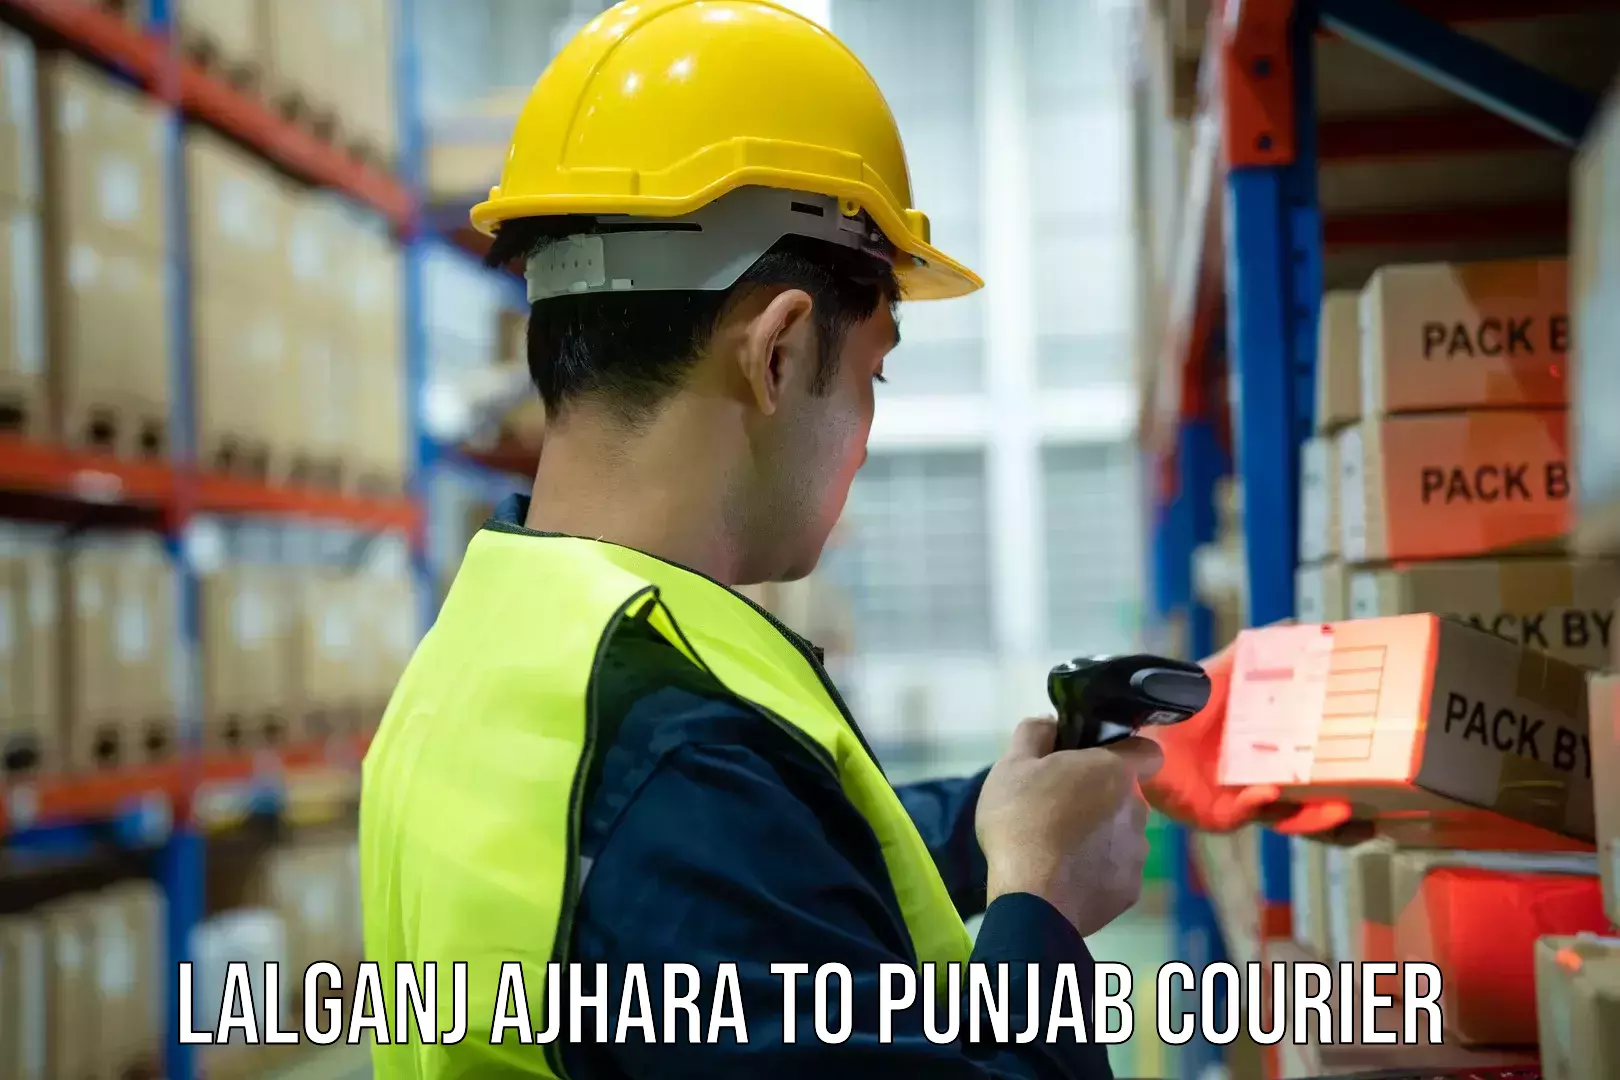 Versatile courier offerings Lalganj Ajhara to Punjab